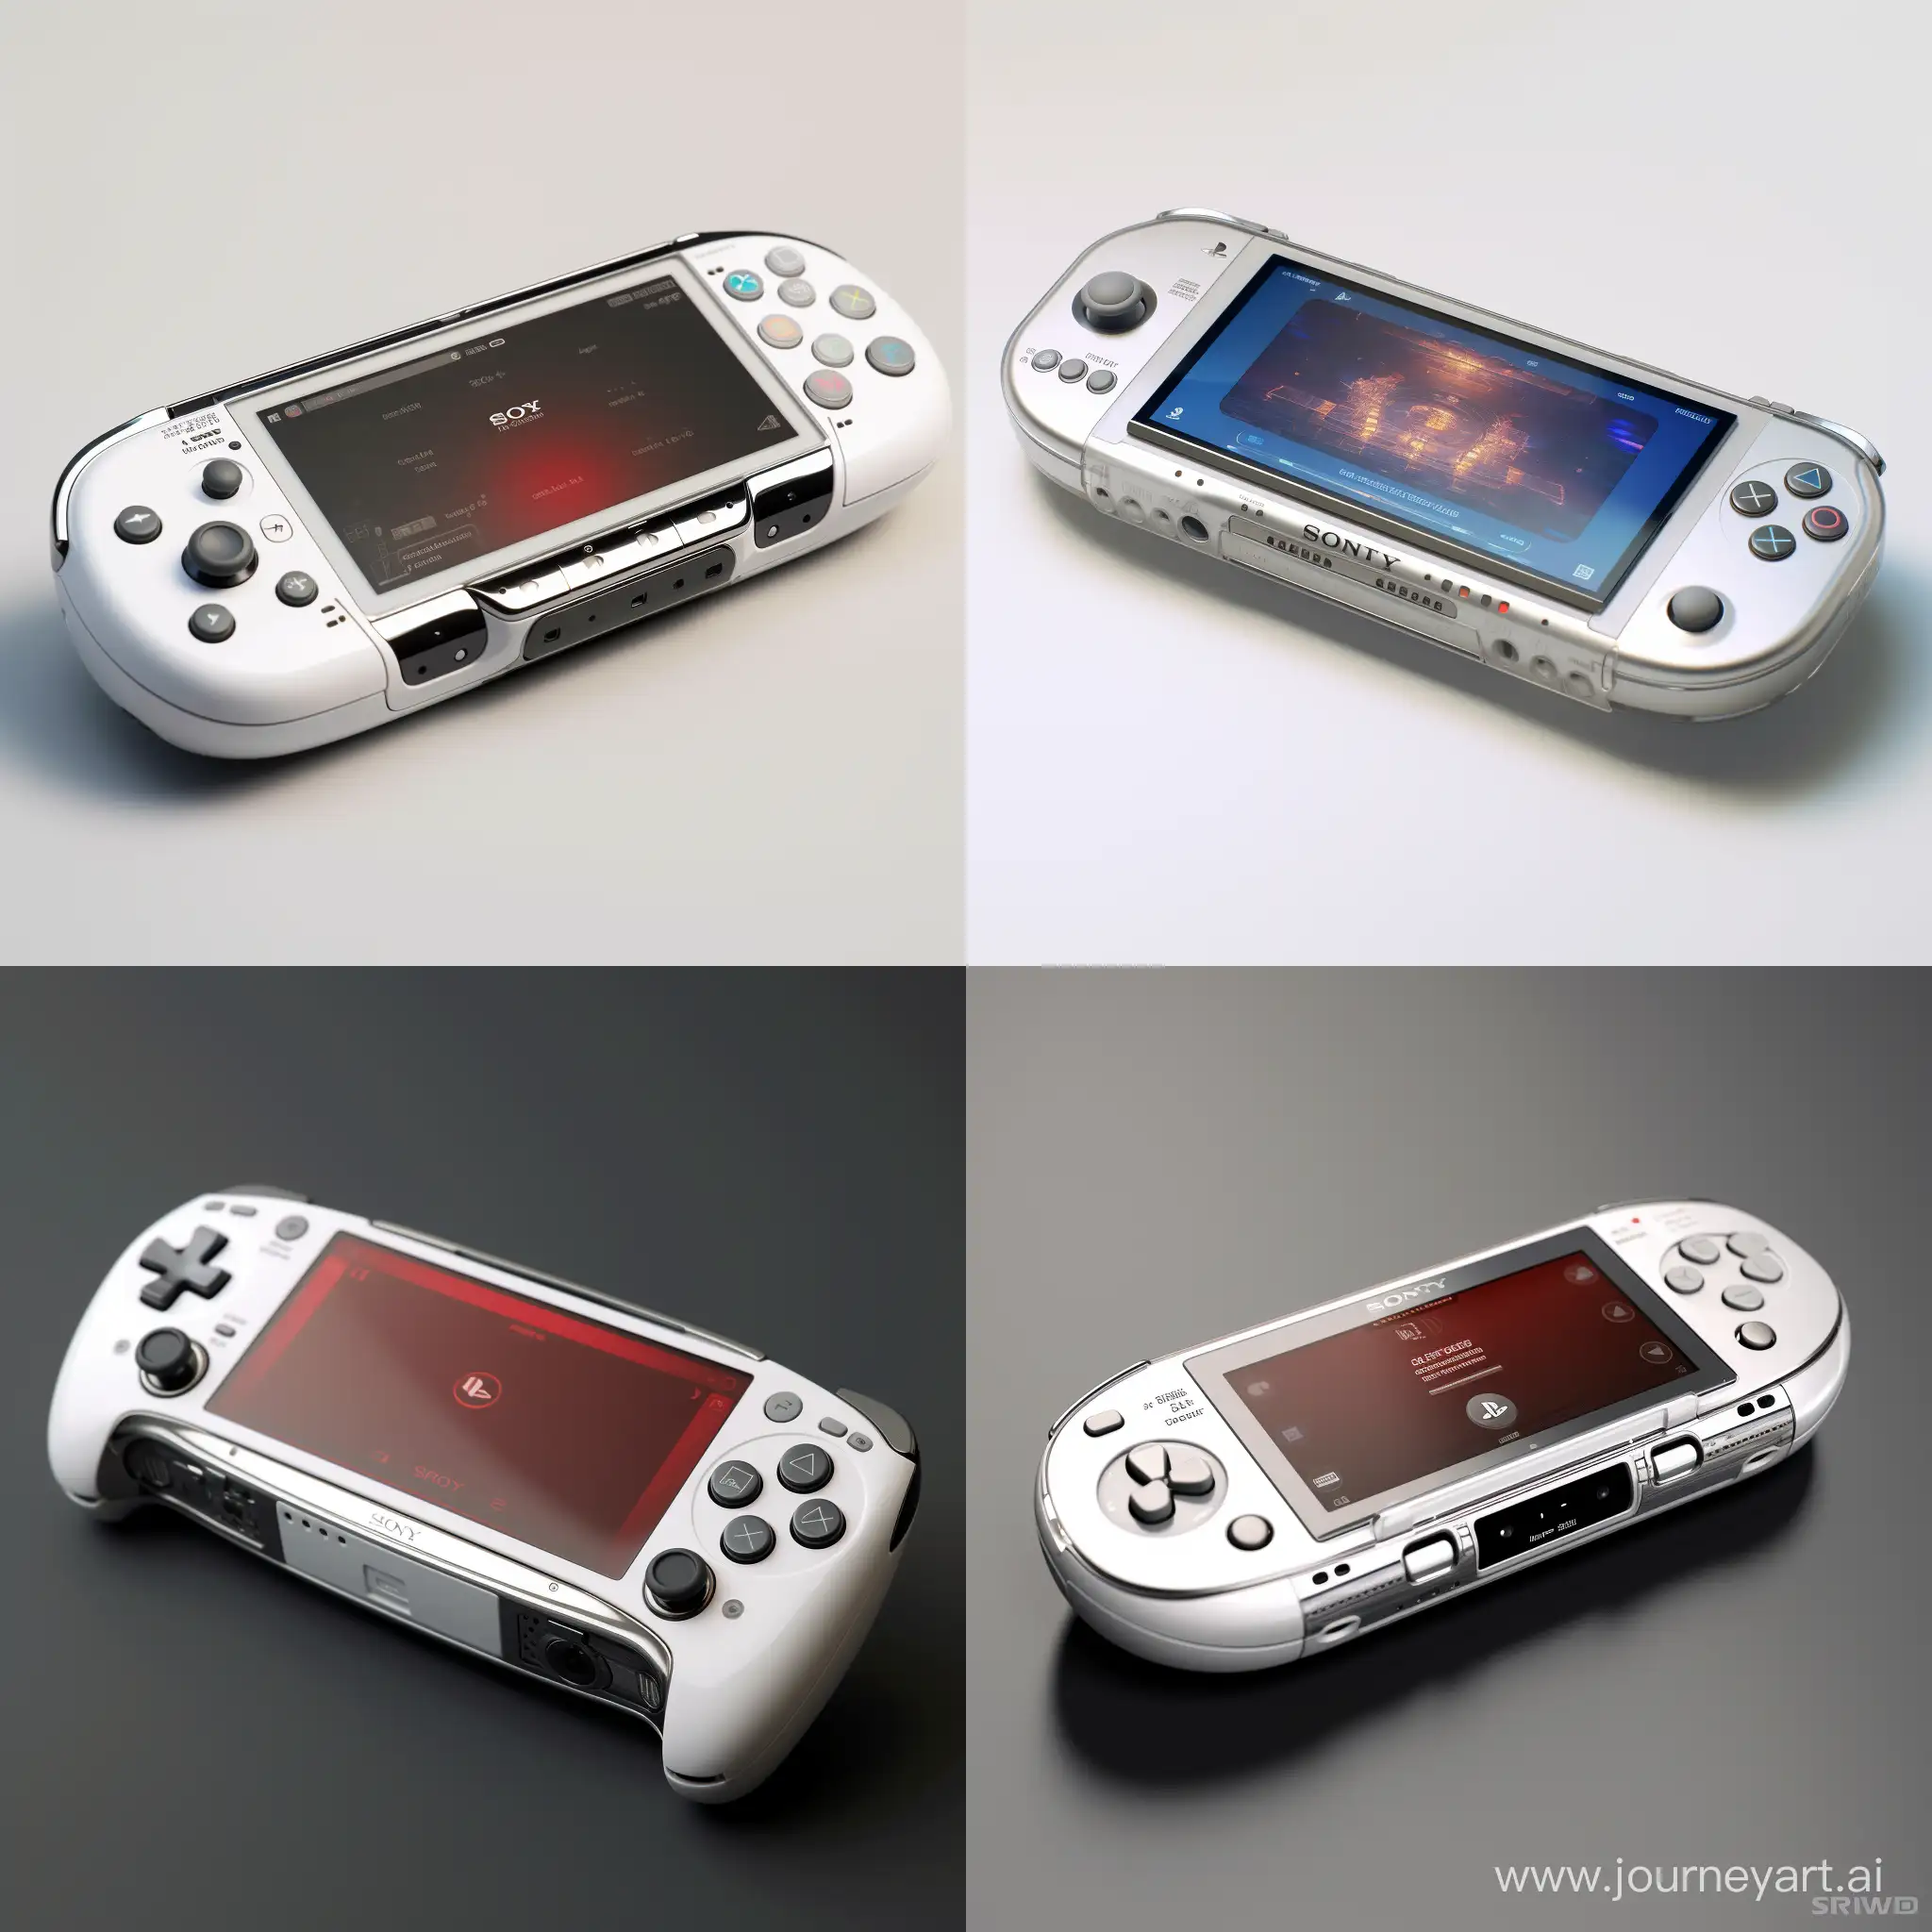 Une PSP de Sony de 2025, dans un style rétro futuriste. La console est entièrement blanche, avec des accents argentés. La surface de la console est lisse et réfléchissante, avec un logo Sony brillant sur le devant. La console est équipée d'un écran tactile de 6 pouces, d'une caméra frontale et arrière, et d'un lecteur de cartes mémoire. La PSP est alimentée par un processeur AMD Ryzen 7 6800U et dispose de 16 Go de RAM. La console est compatible avec les jeux PSP classiques, ainsi qu'avec les jeux modernes.